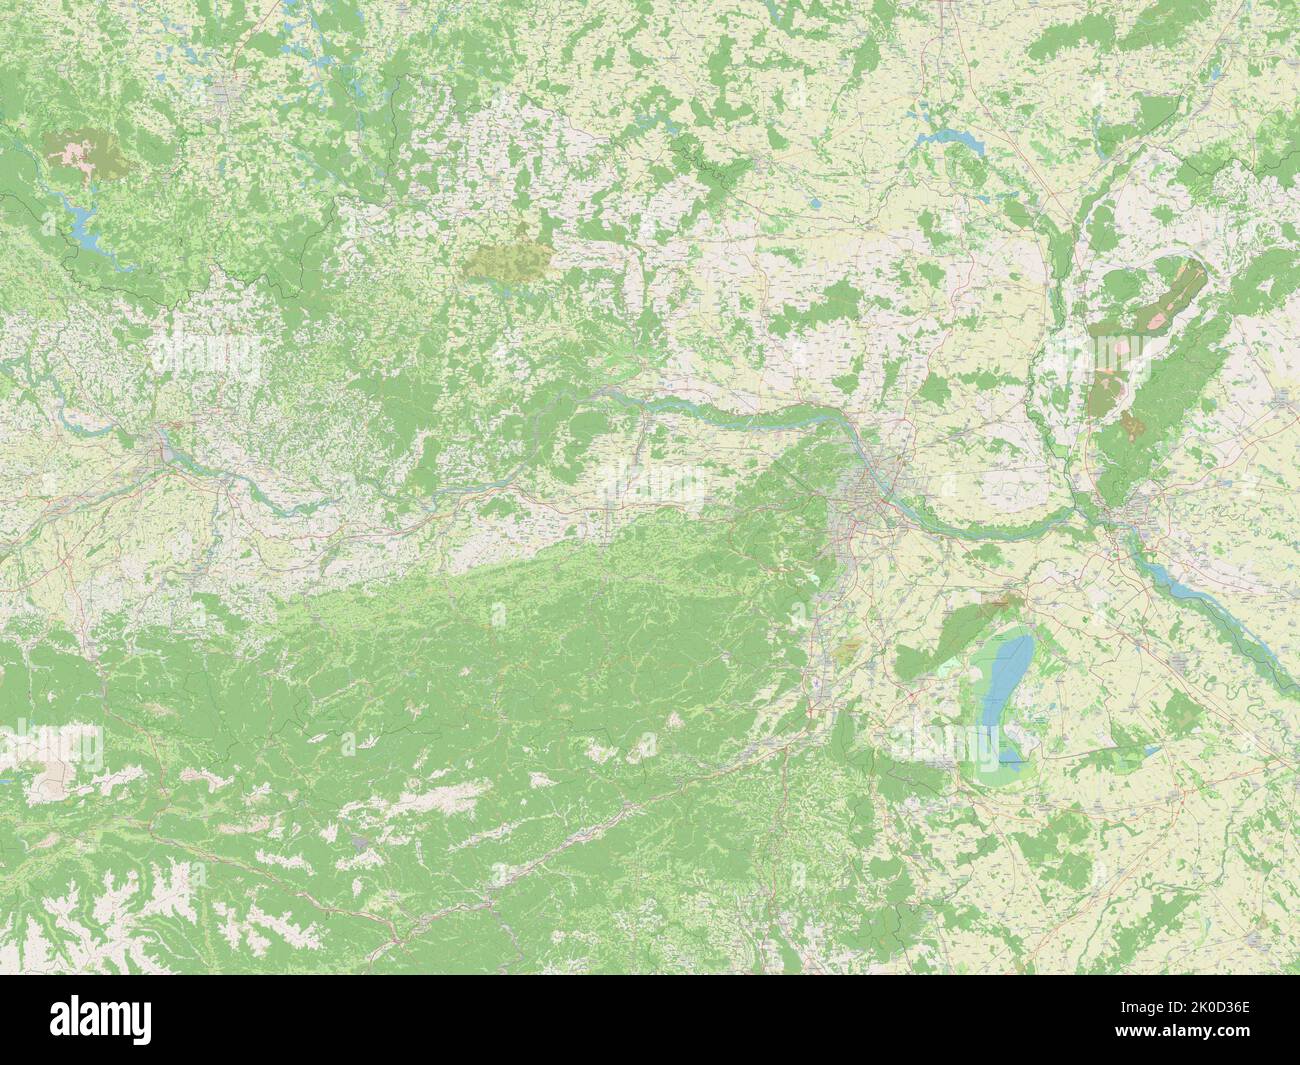 Niederosterreich, state of Austria. Open Street Map Stock Photo